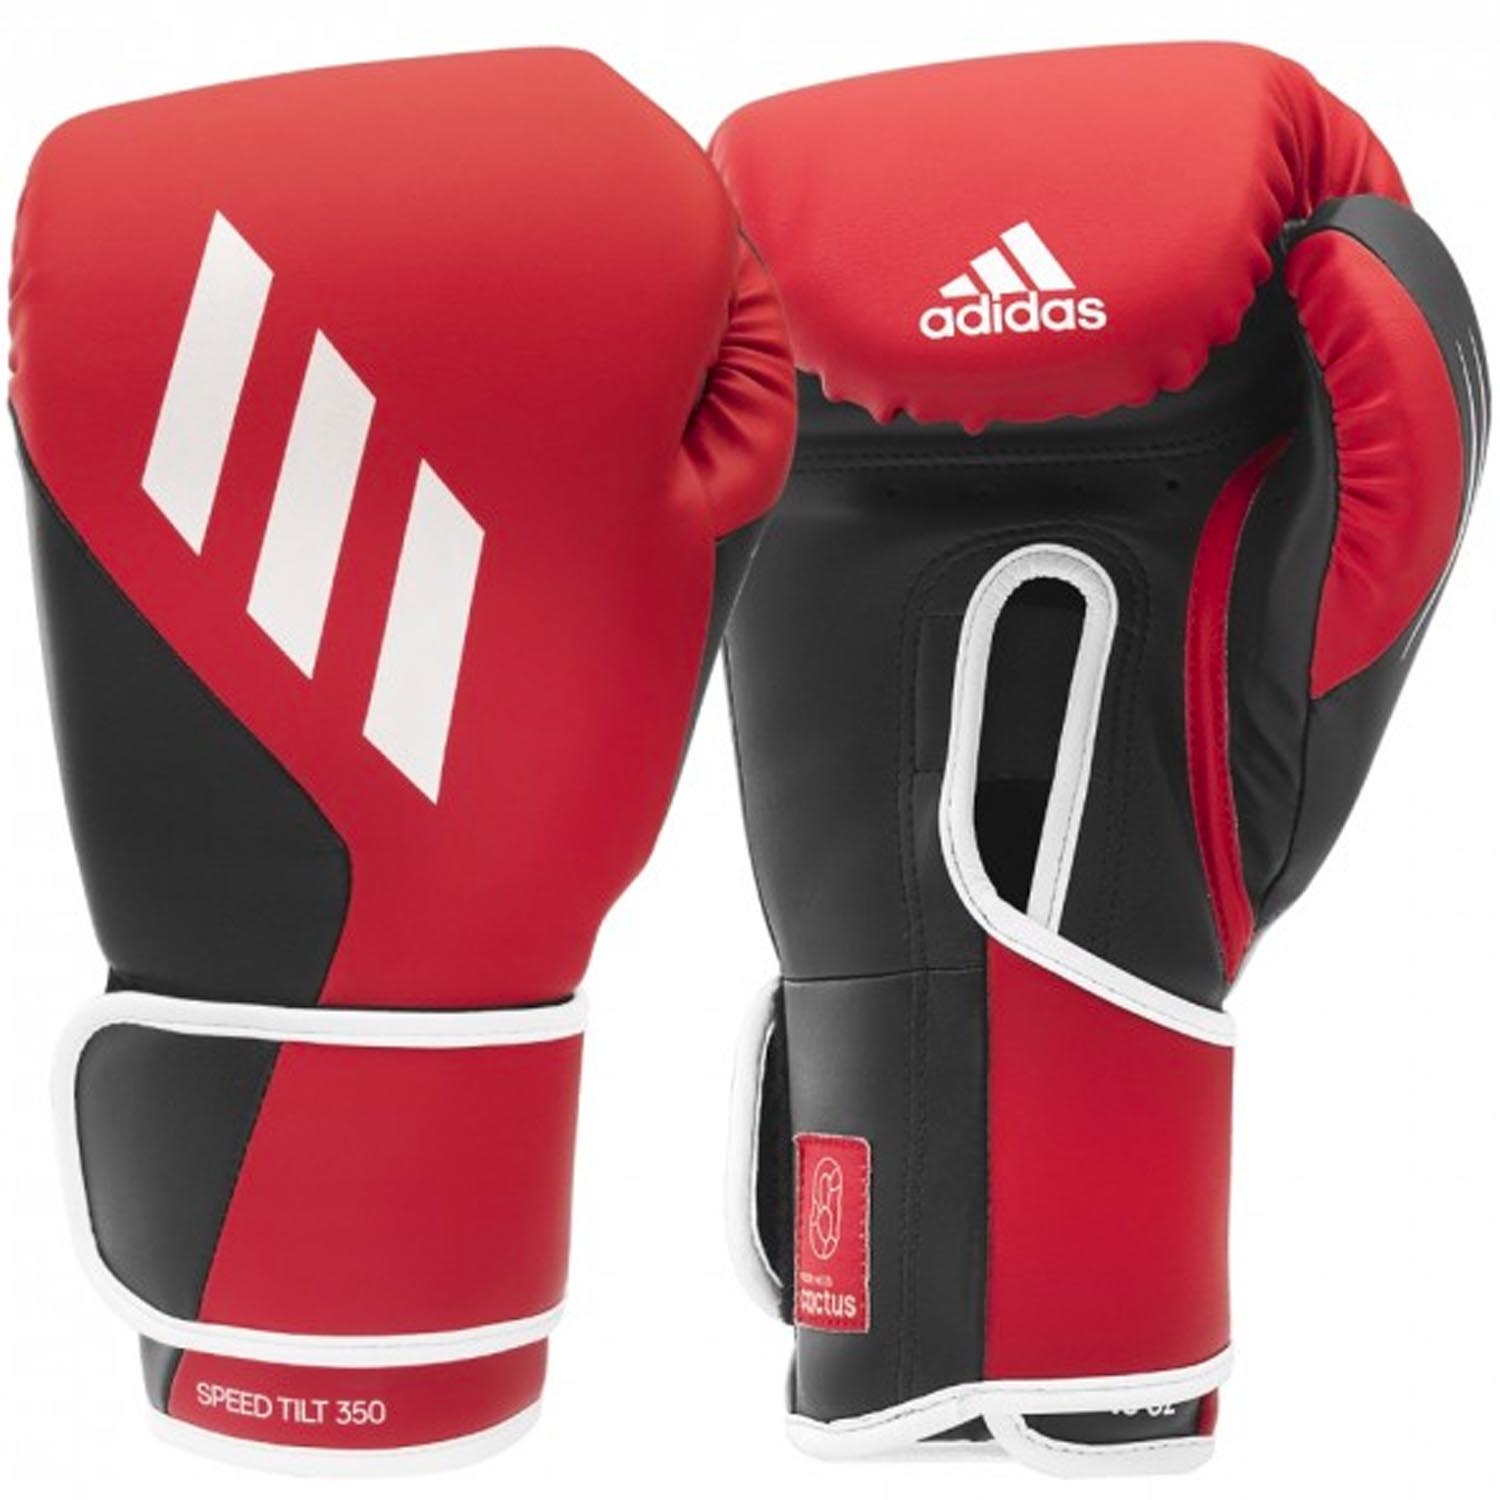 adidas Boxing Gloves, Speed Tilt 350V, red-black 12 Oz